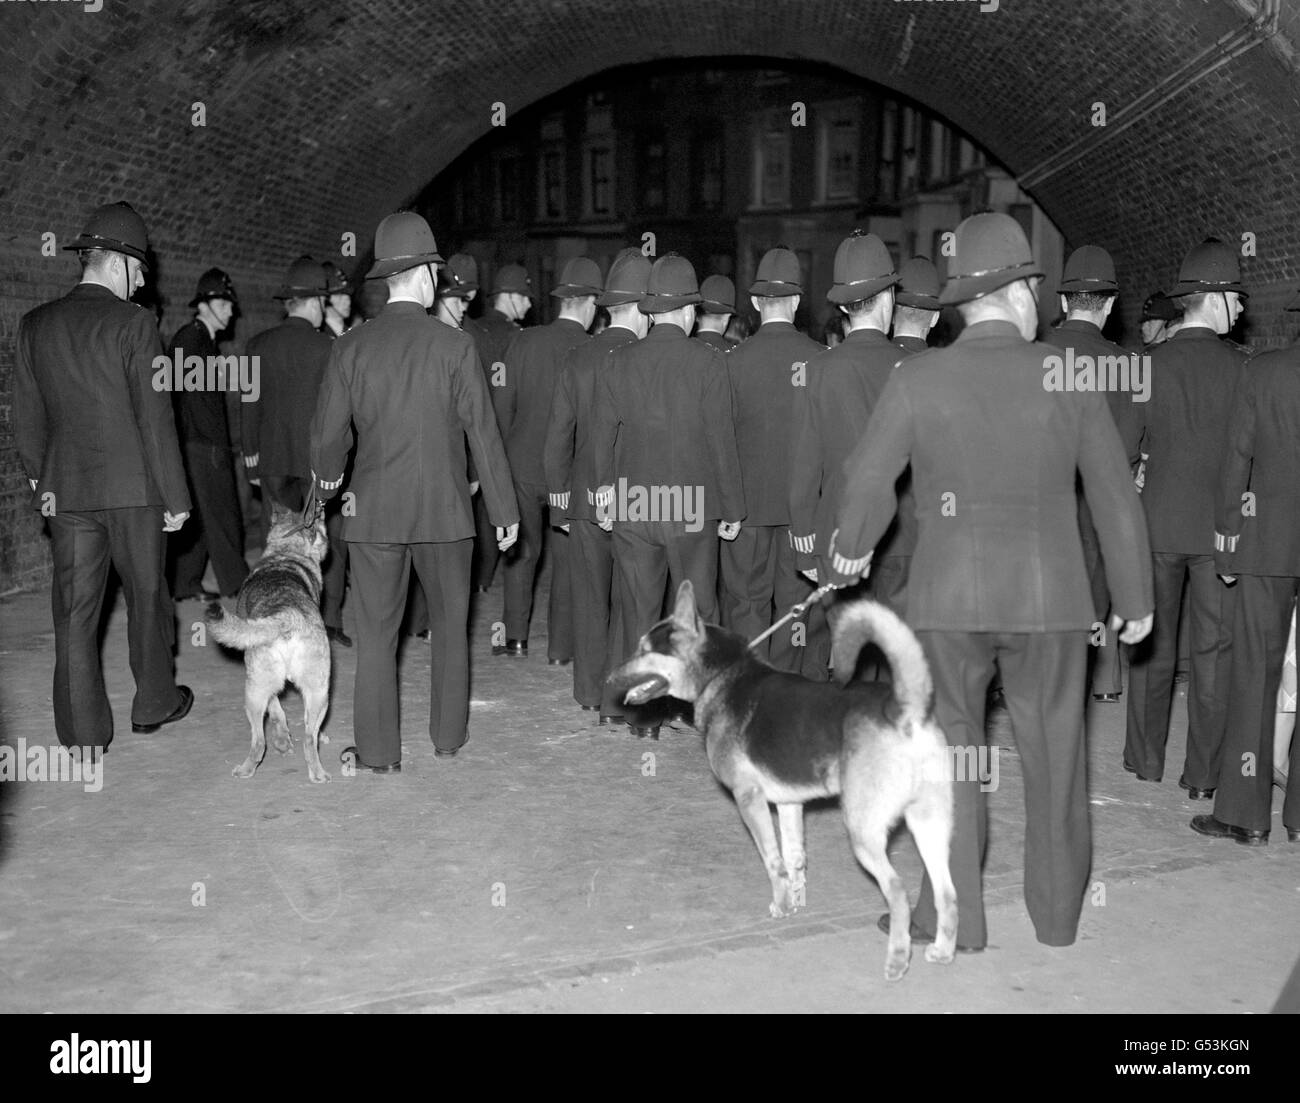 Polizeibeamte mit Hunden an einer Straße im Londoner Stadtteil Notting Hill während erneuter Rassenausschreitungen zwischen Weißen und Schwarzen, die in der Vornacht ausbrachen. Stockfoto